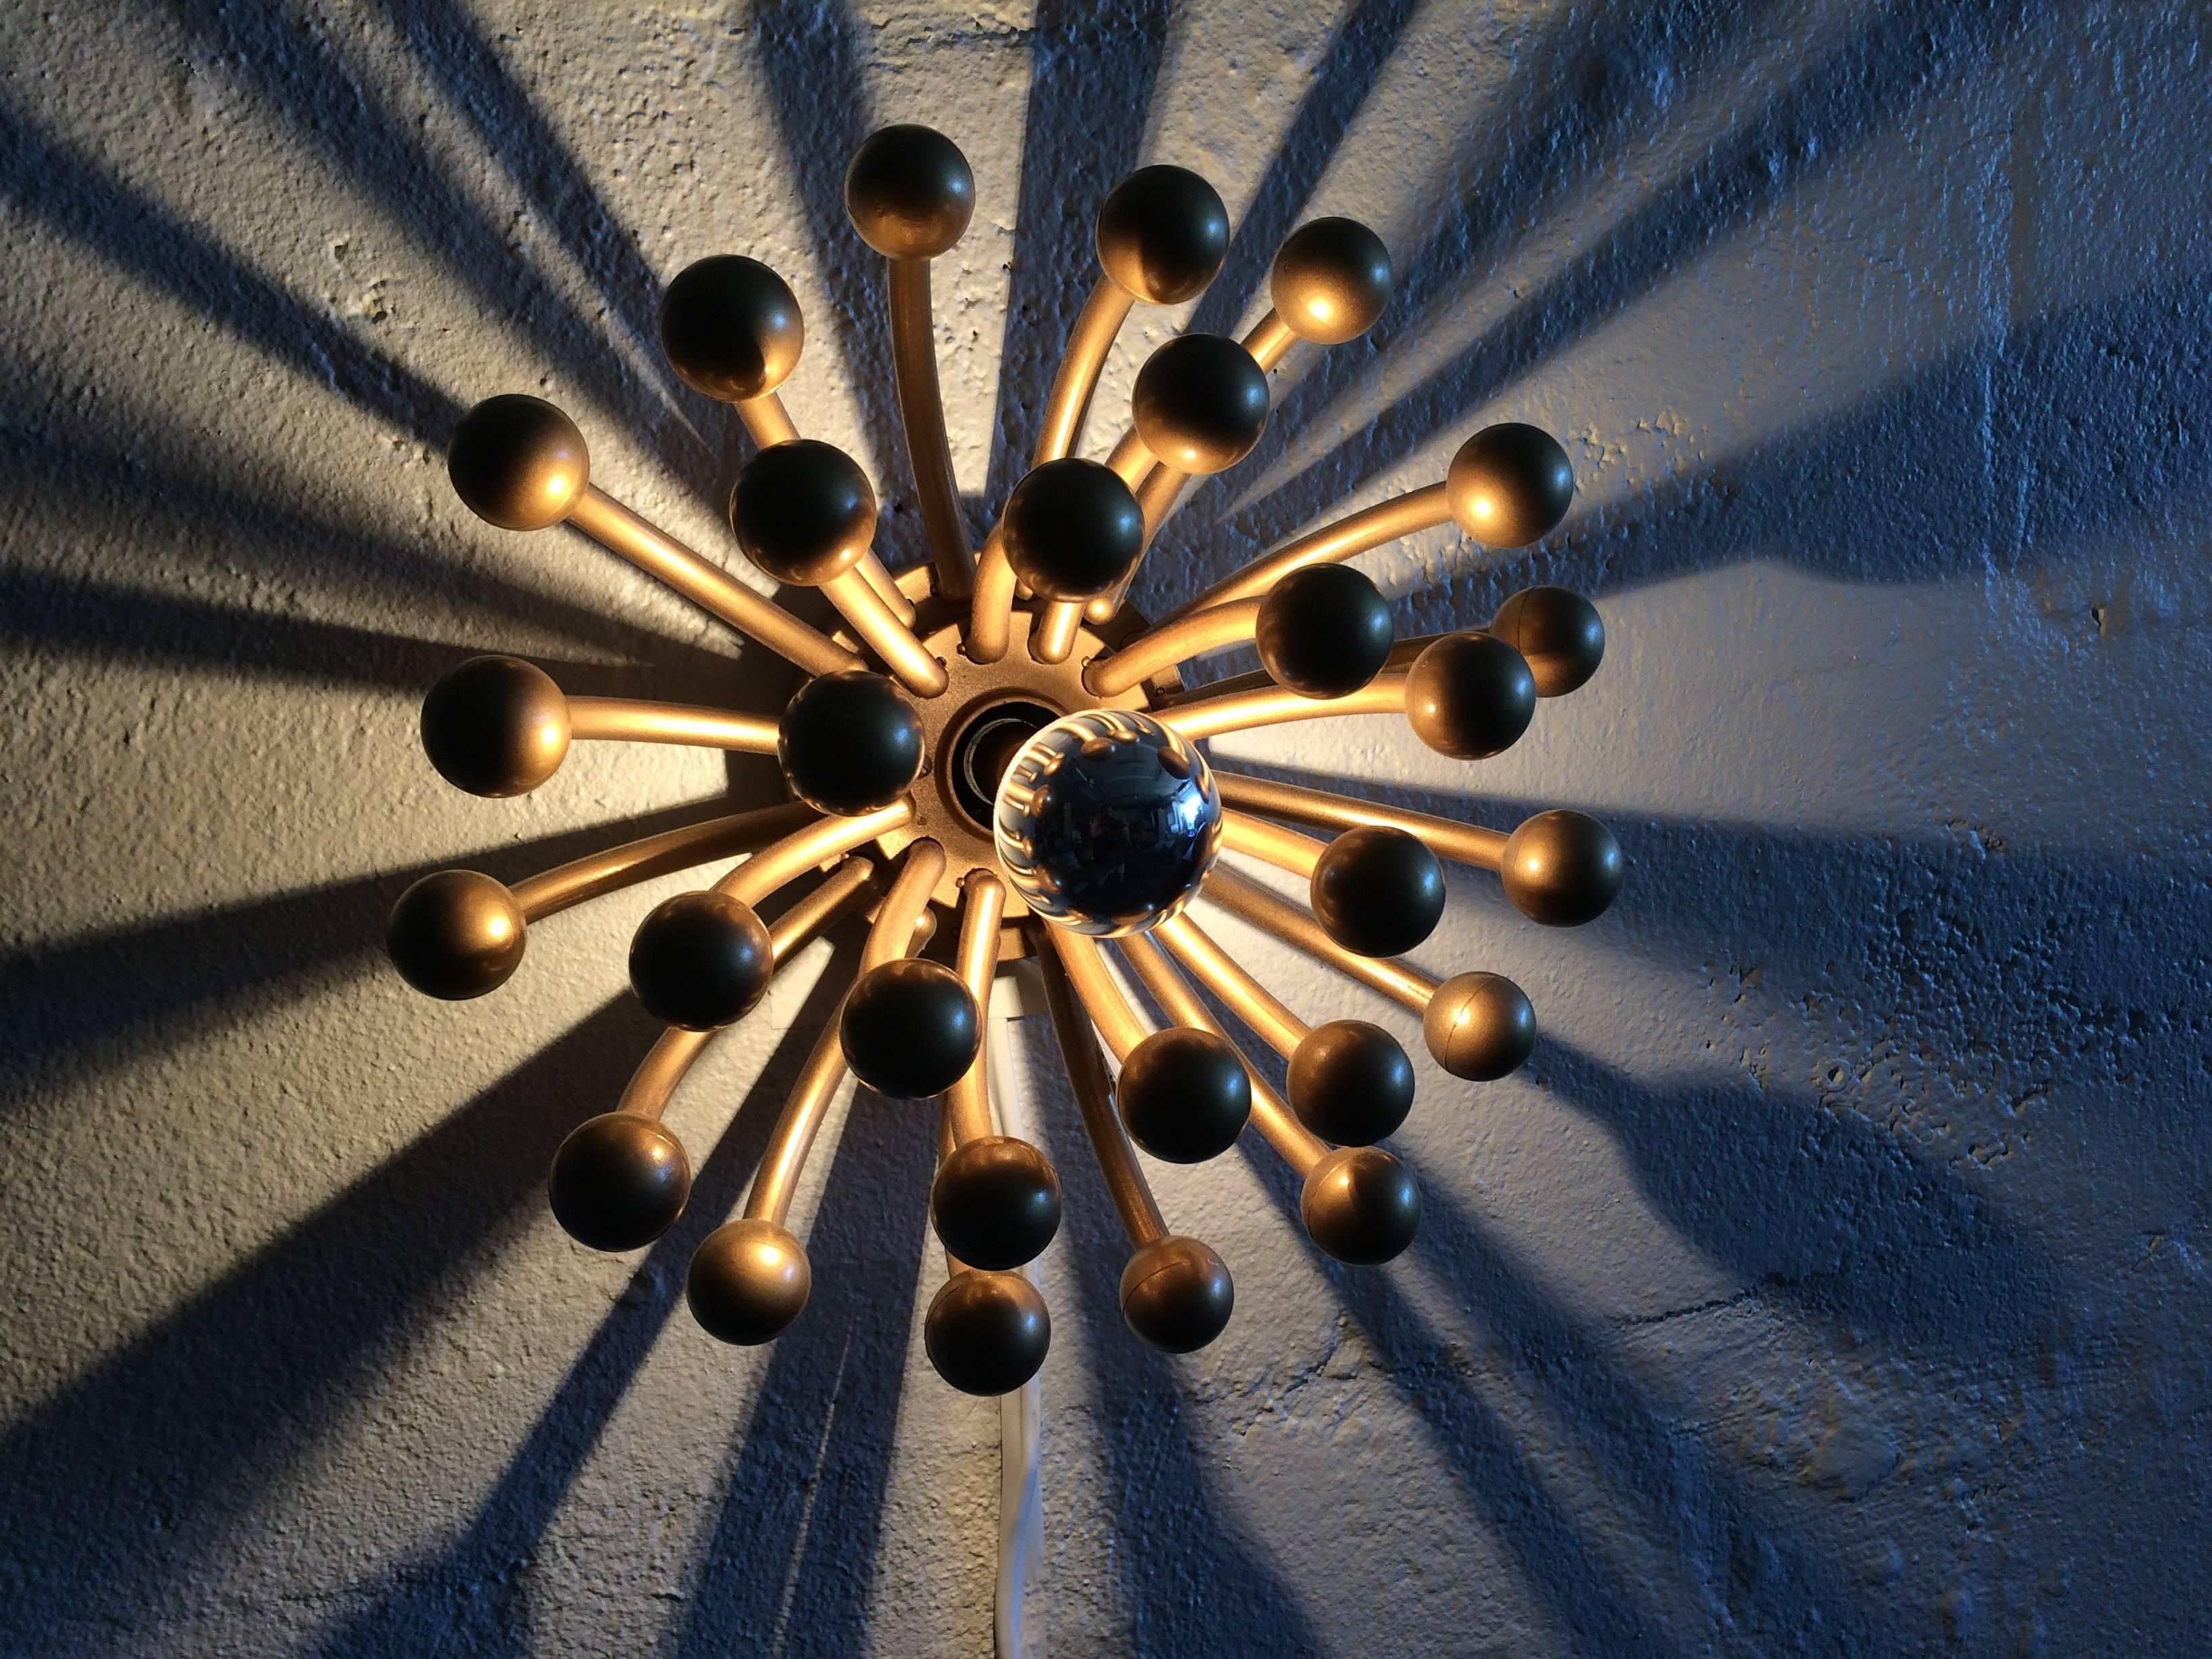 Plastic Pistillino Wall Lamps in Gold Finish, Design Studio Tetrarch